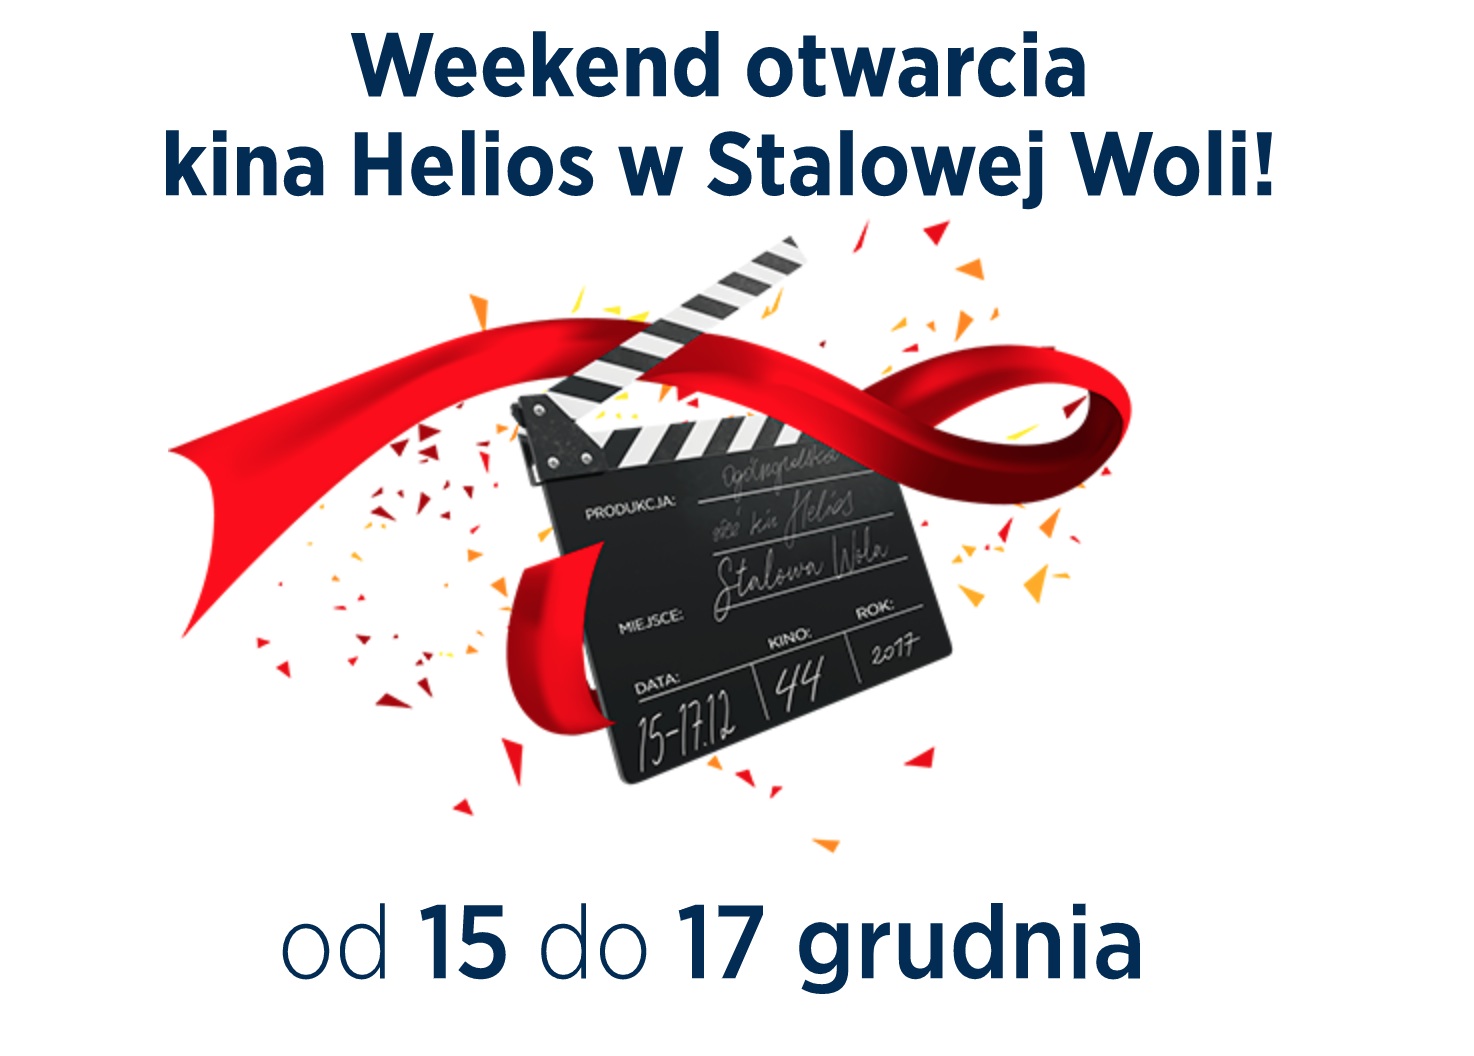 Otwarcie kina Helios w Stalowej Woli